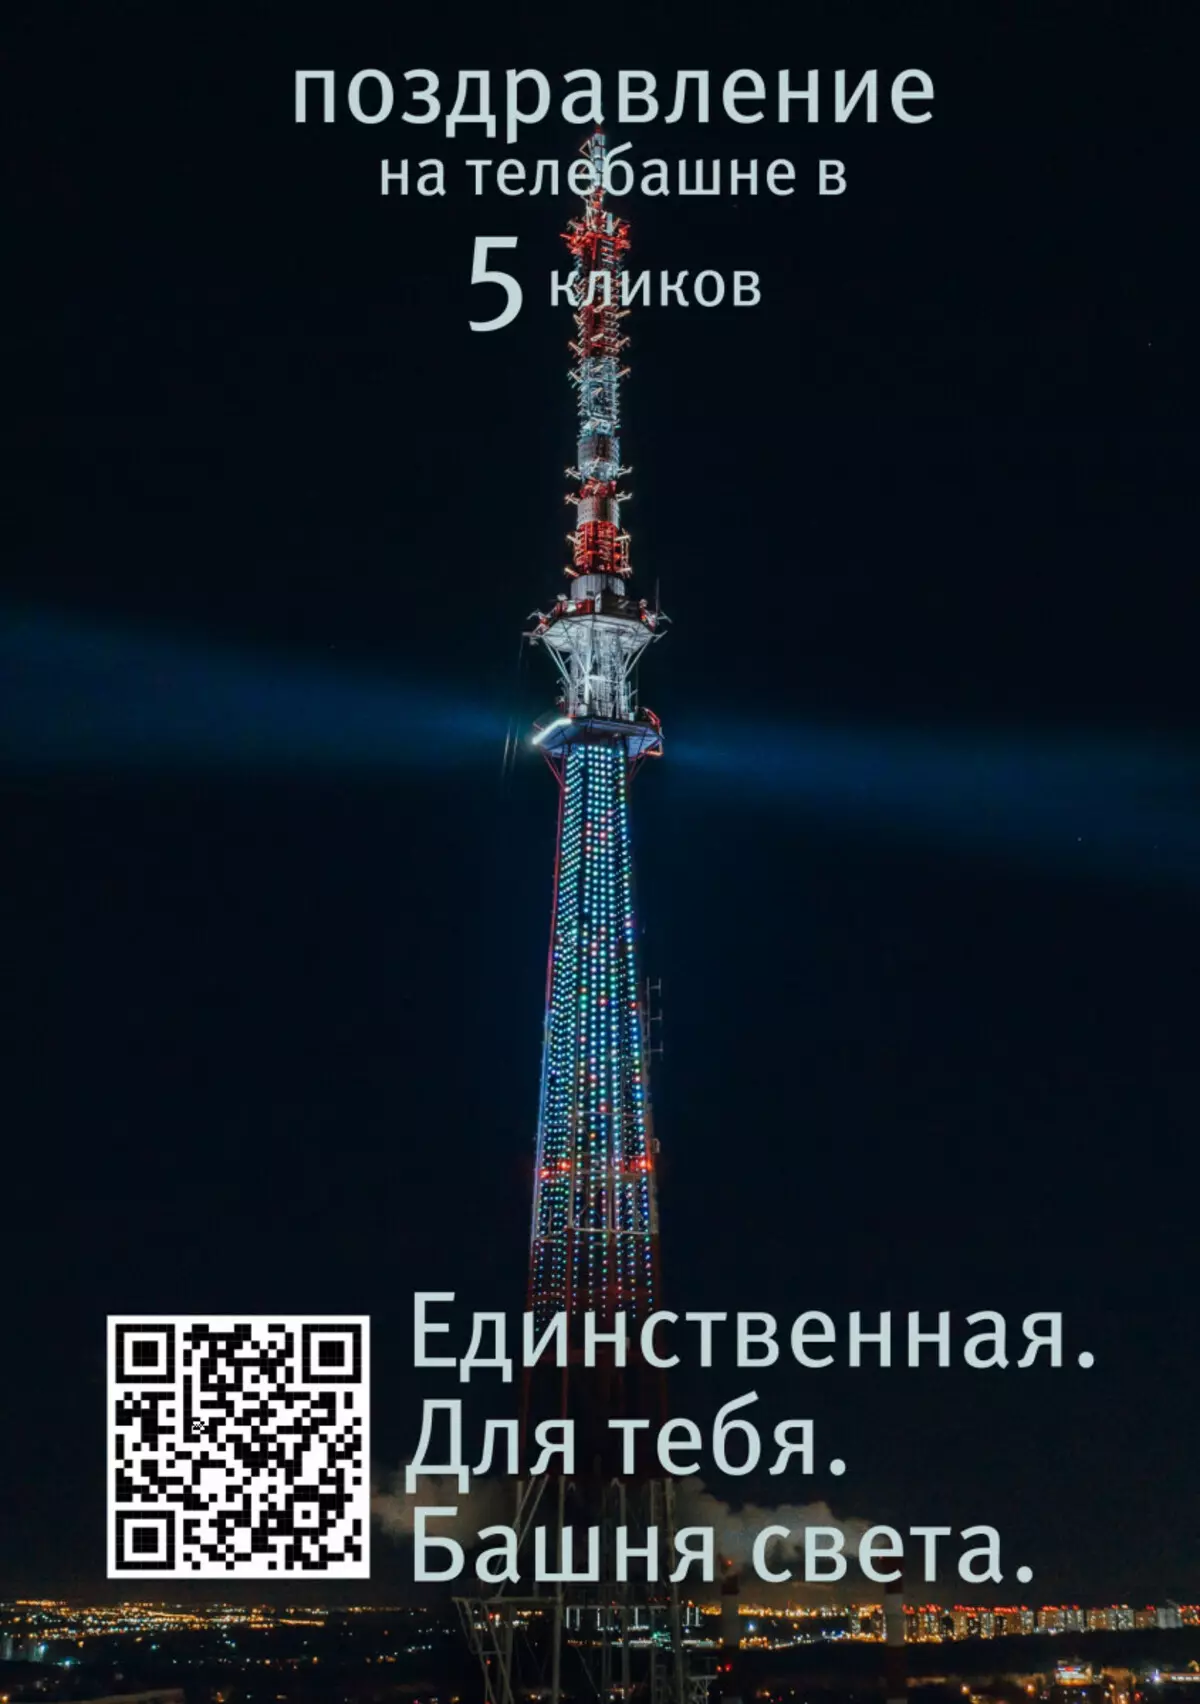 Nizhny Novgorod bisa nggawe congrapuran cahya ing televisi 20952_1